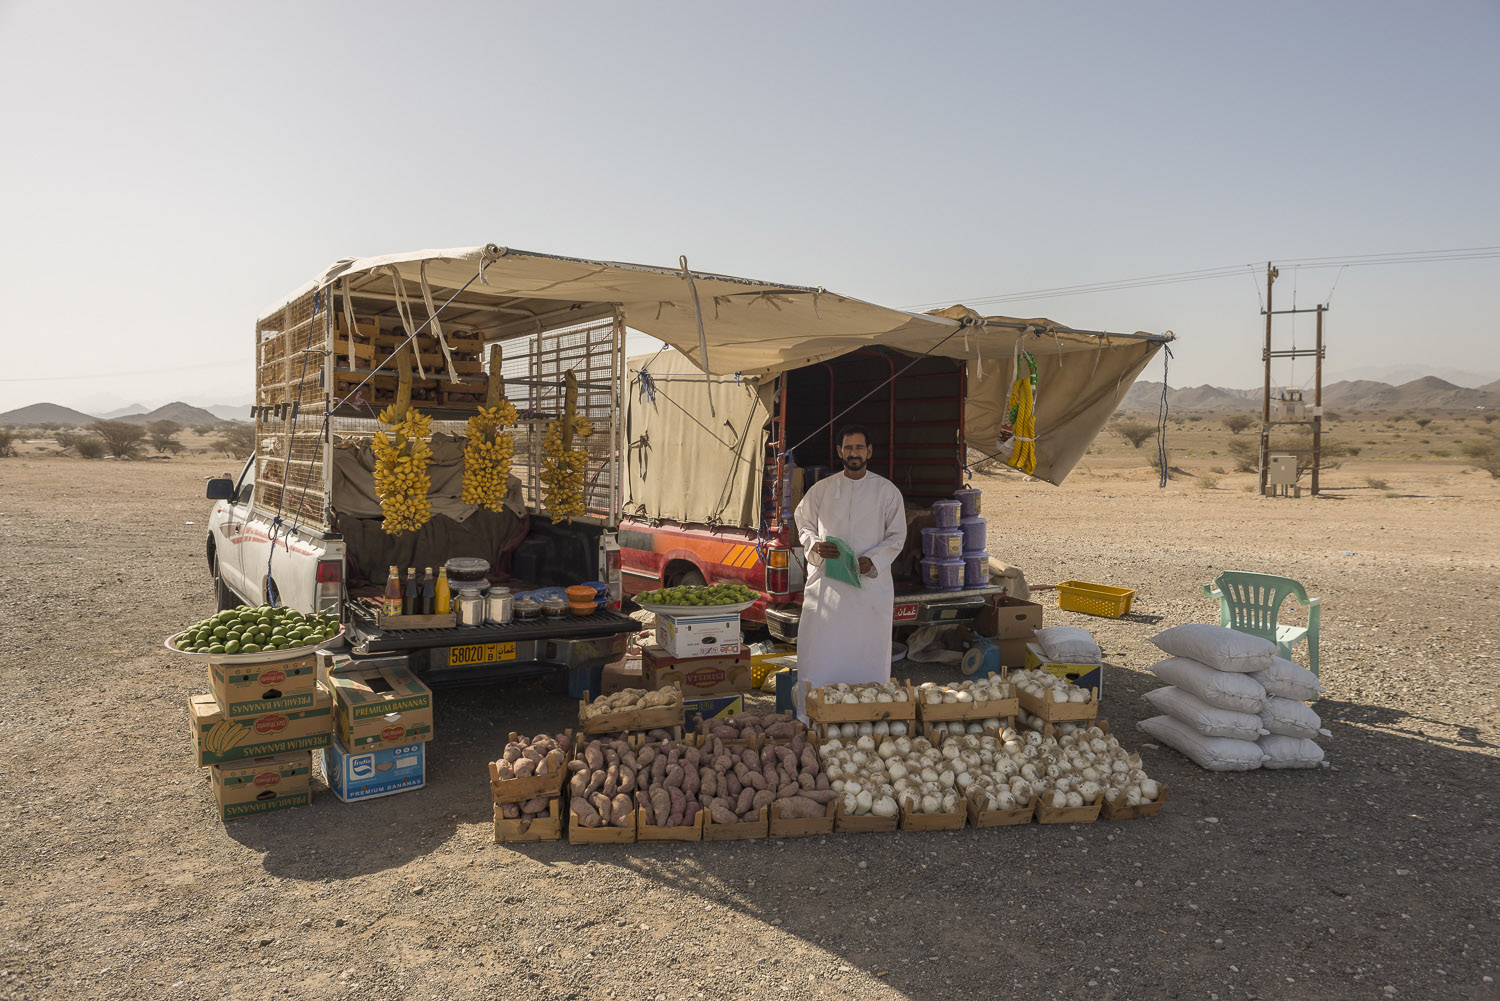 roadside-stalls-dubai-uae-vegetables-Al-Ain-desert-travelphotography-jo-kearney-photography-video-cheltenham.jpg